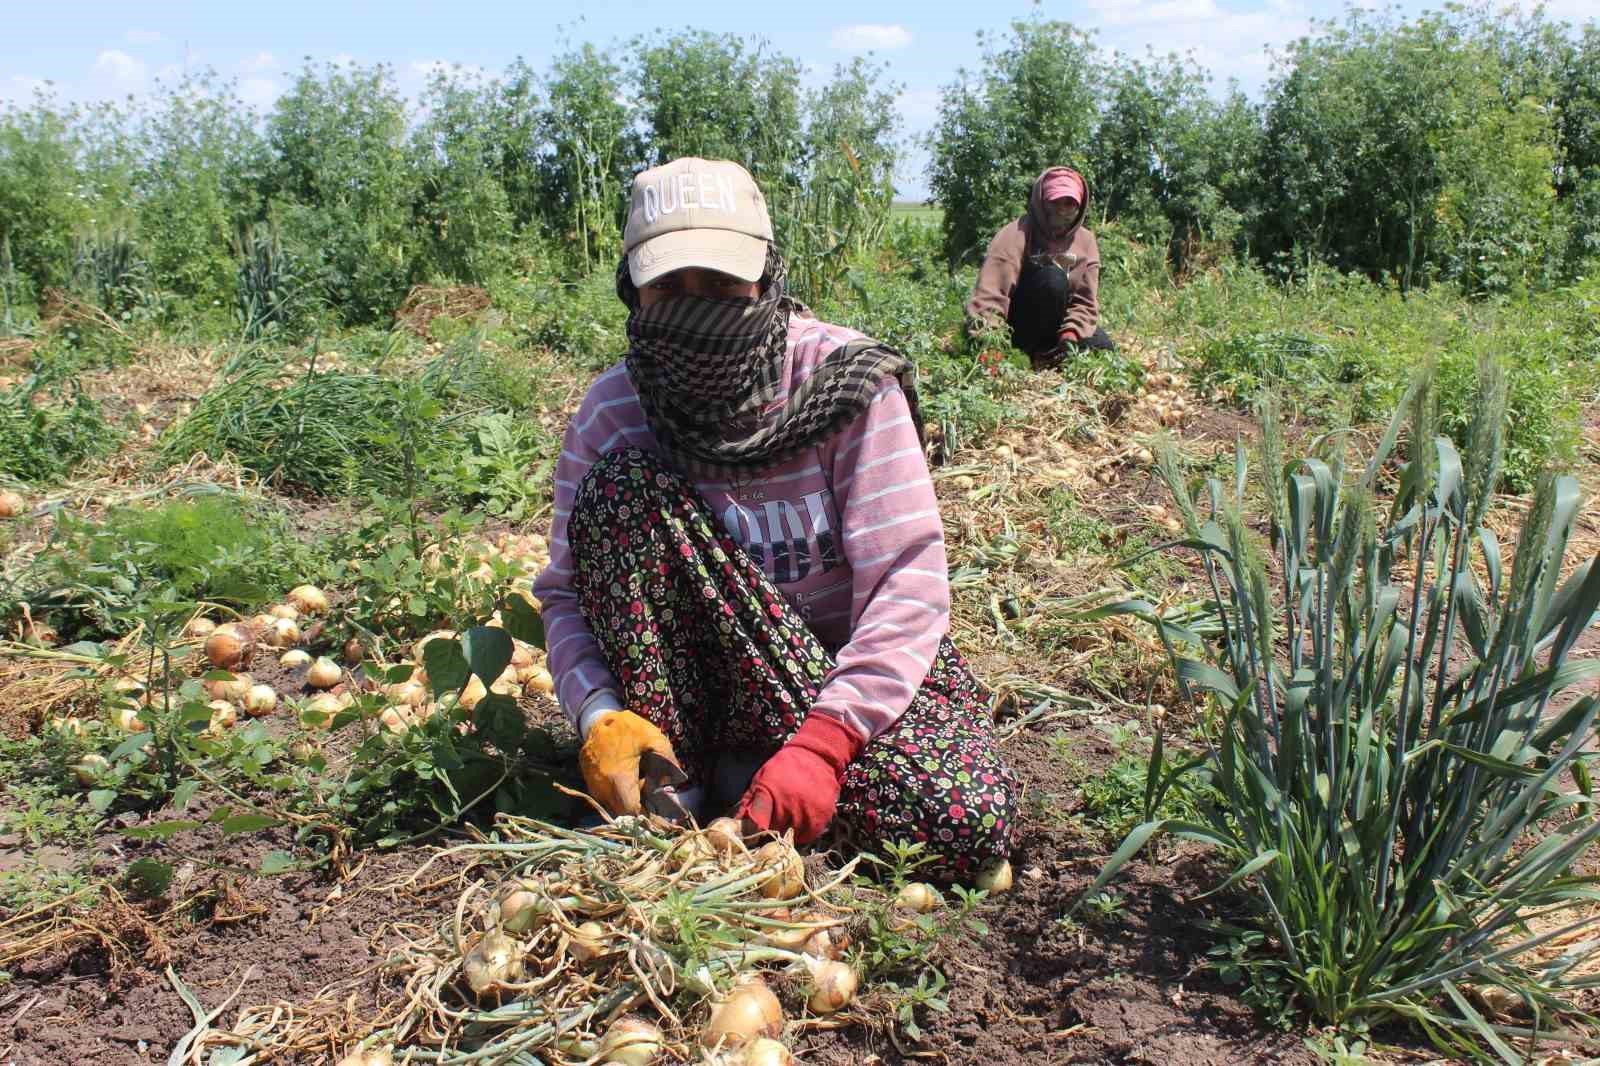 Zorlu mesai, günde 12 saat çalışan tarım işçileri 900 TL yevmiye elde ediyor